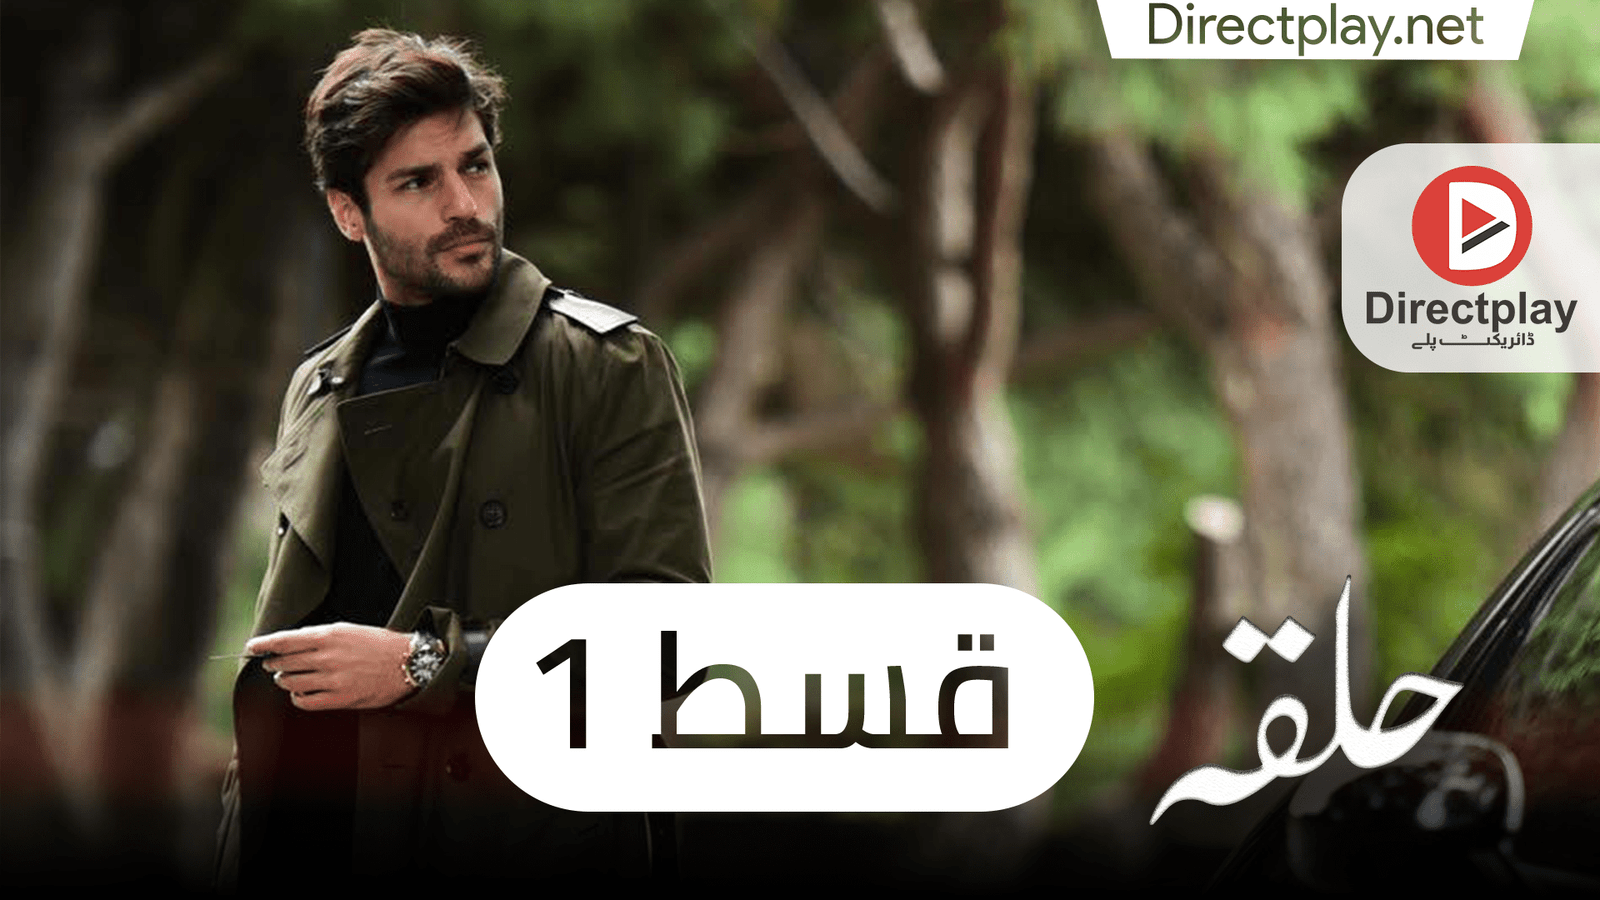 Halka Episode 1 In Urdu Subtitles Directplay